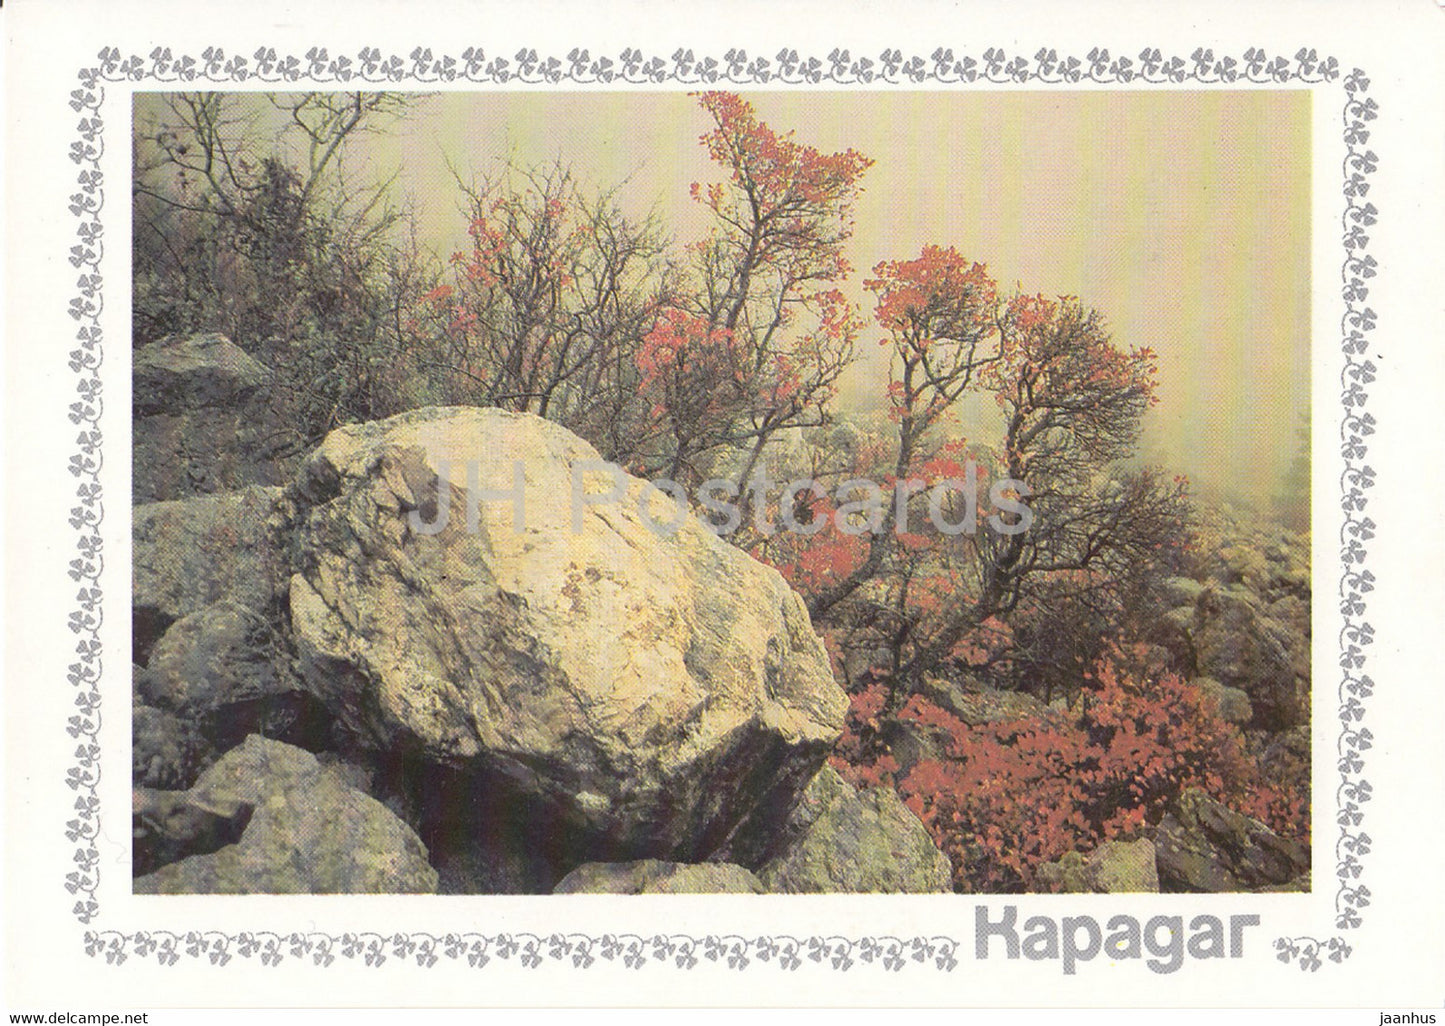 Karadag - Scumpia tree - plants - Crimea - 1989 - Ukraine USSR - unused - JH Postcards